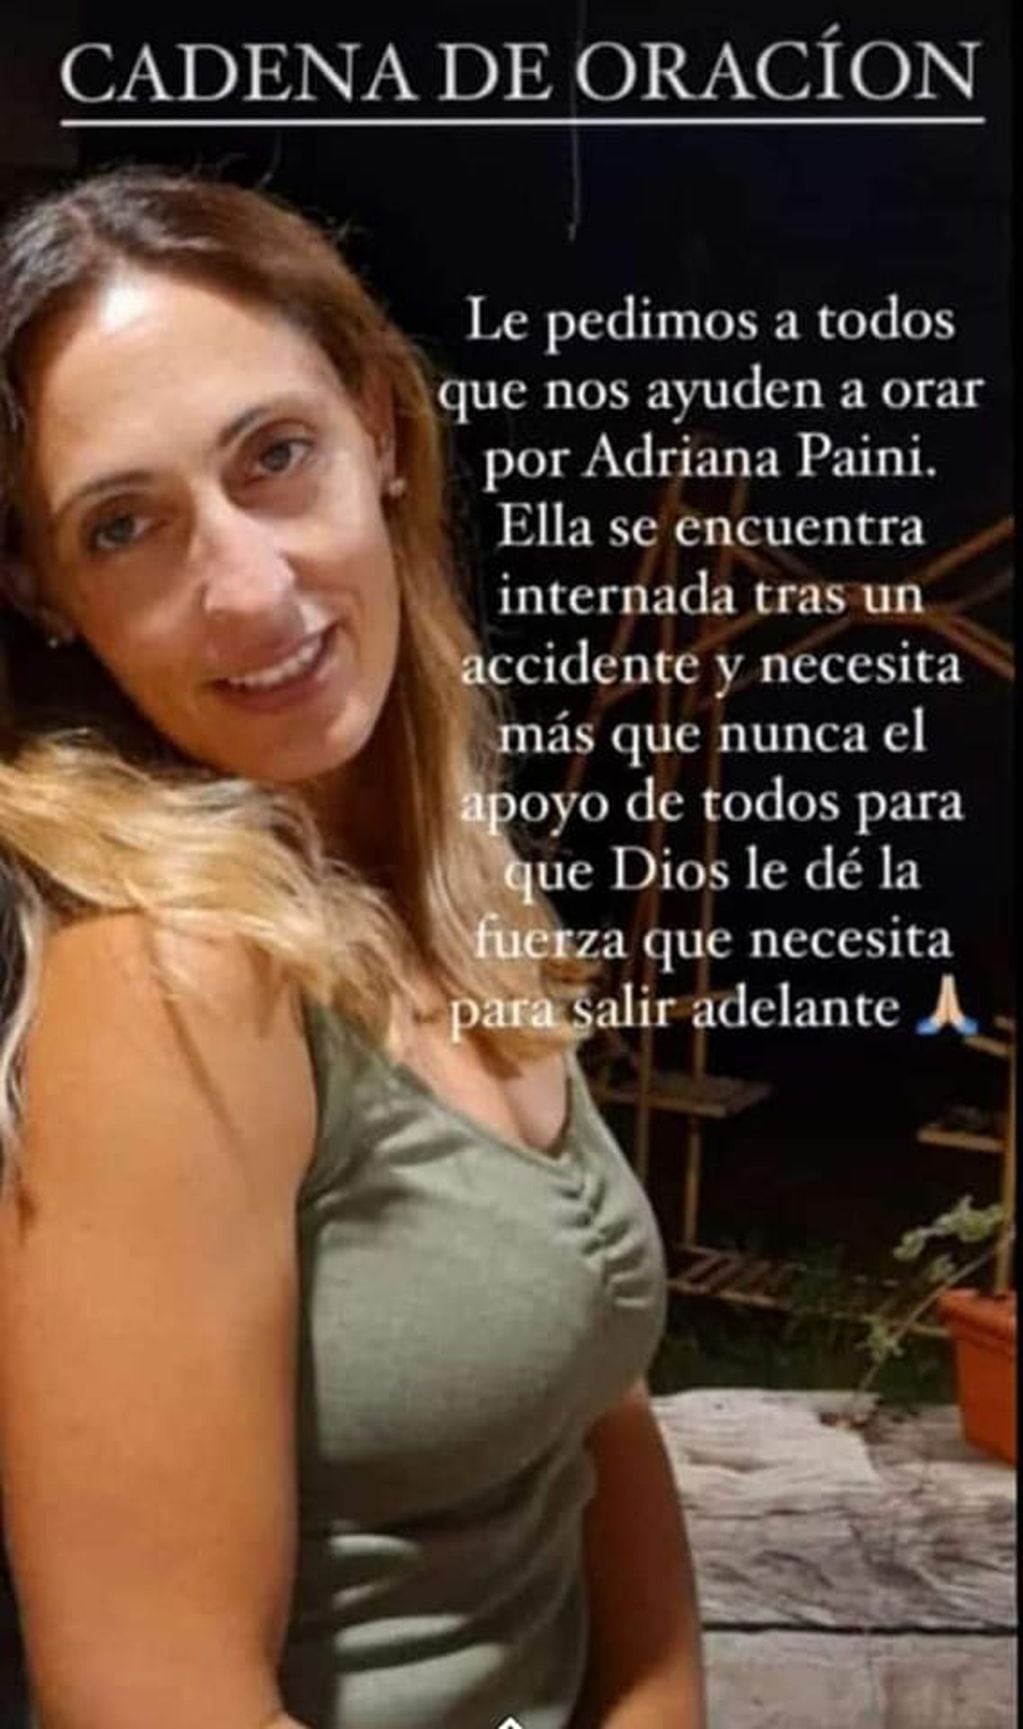 Obispo Trejo pide cadena de oración para Adriana Paini, quien está internada en Córdoba.